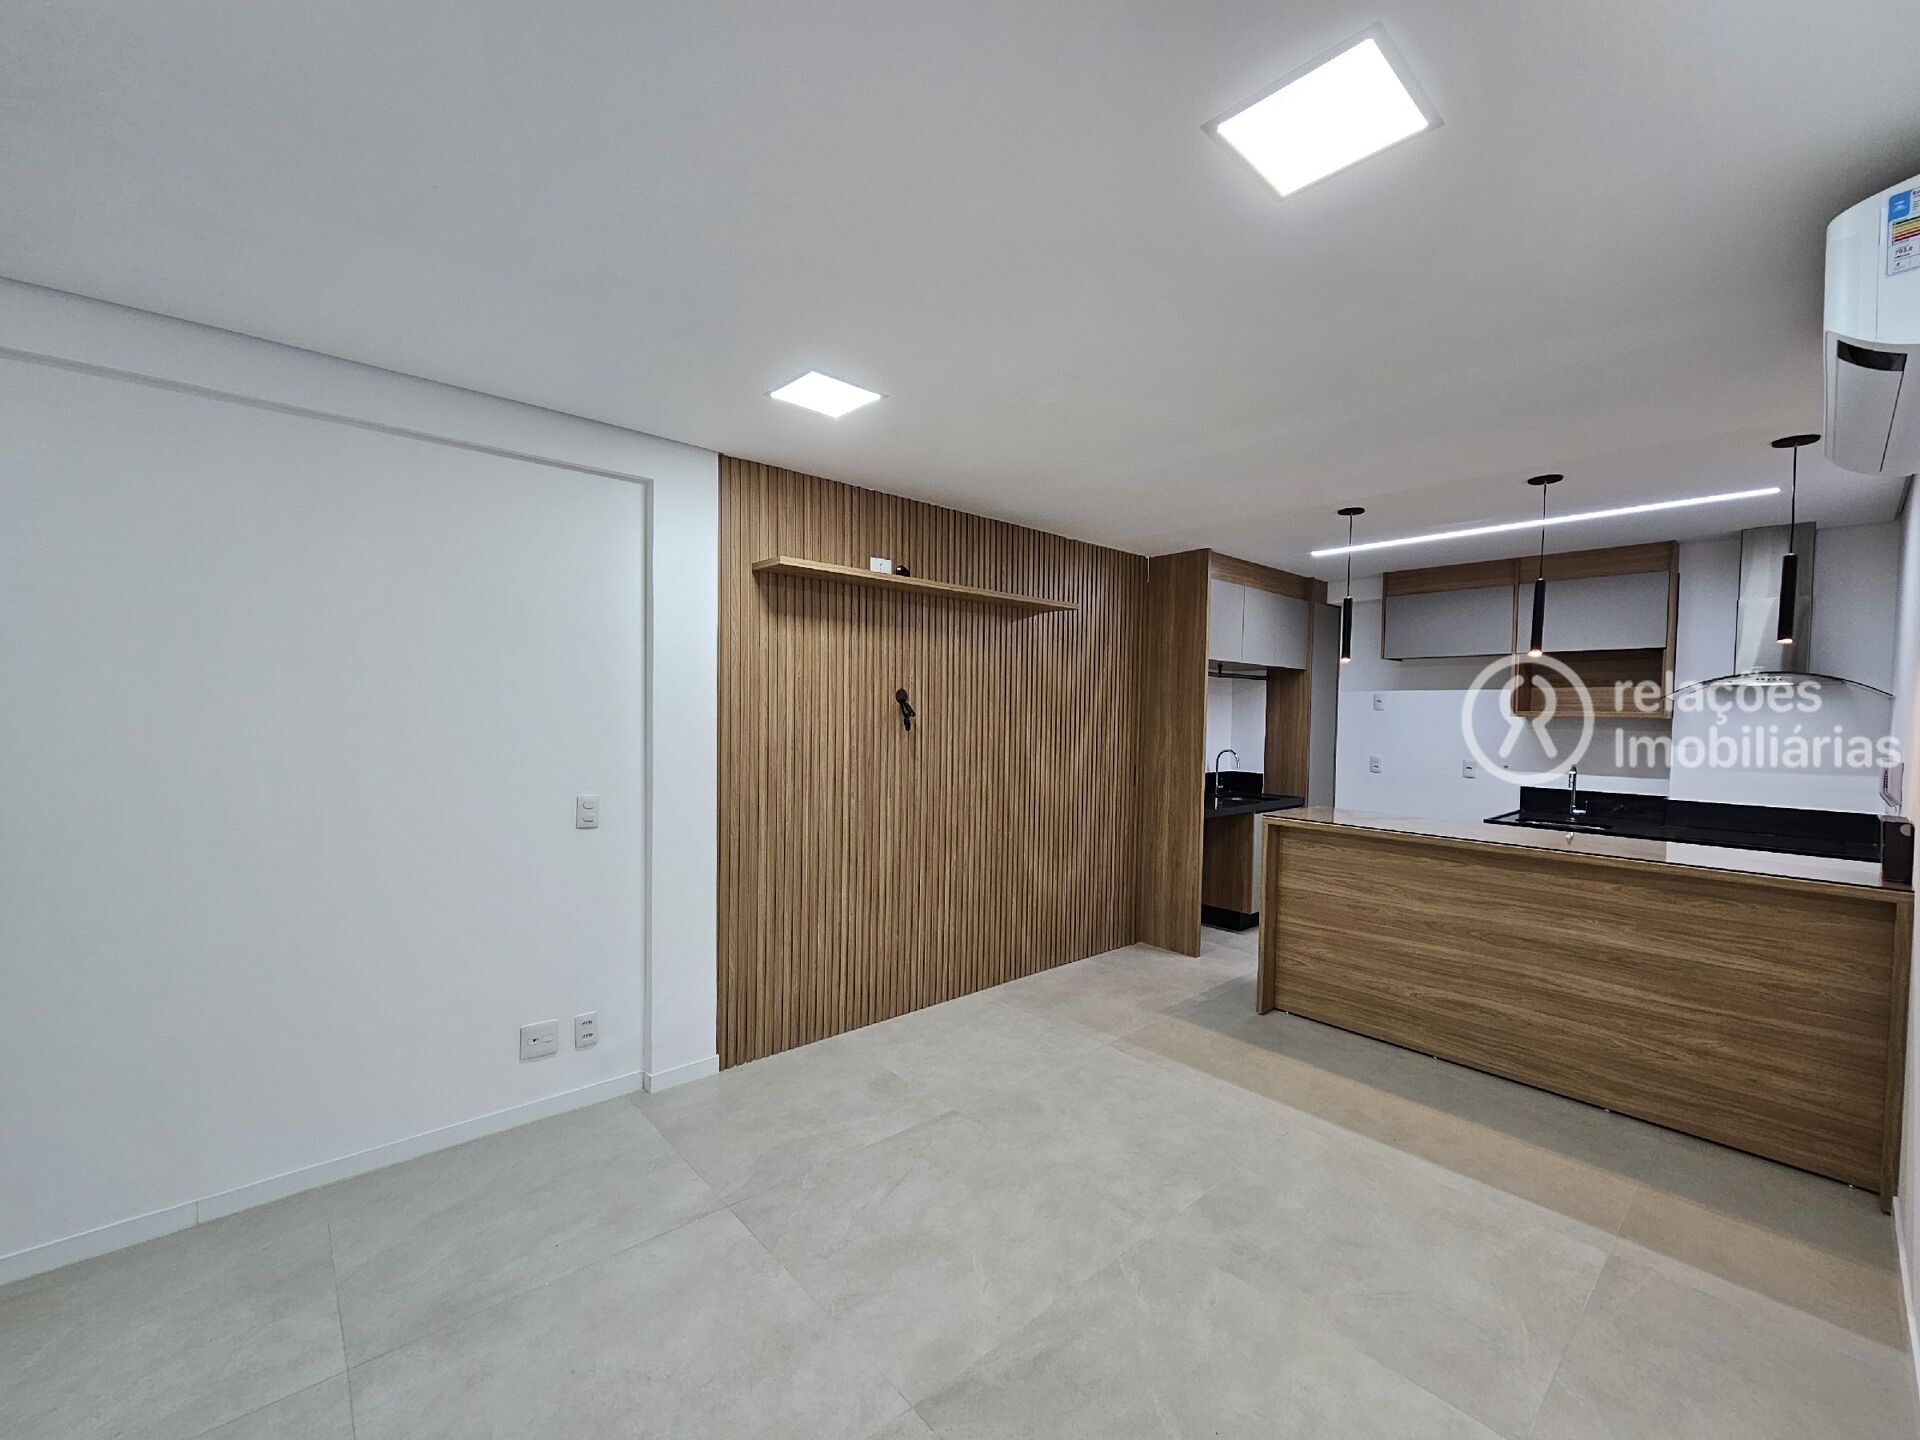 Apartamento, 1 quarto, 74 m² - Foto 2